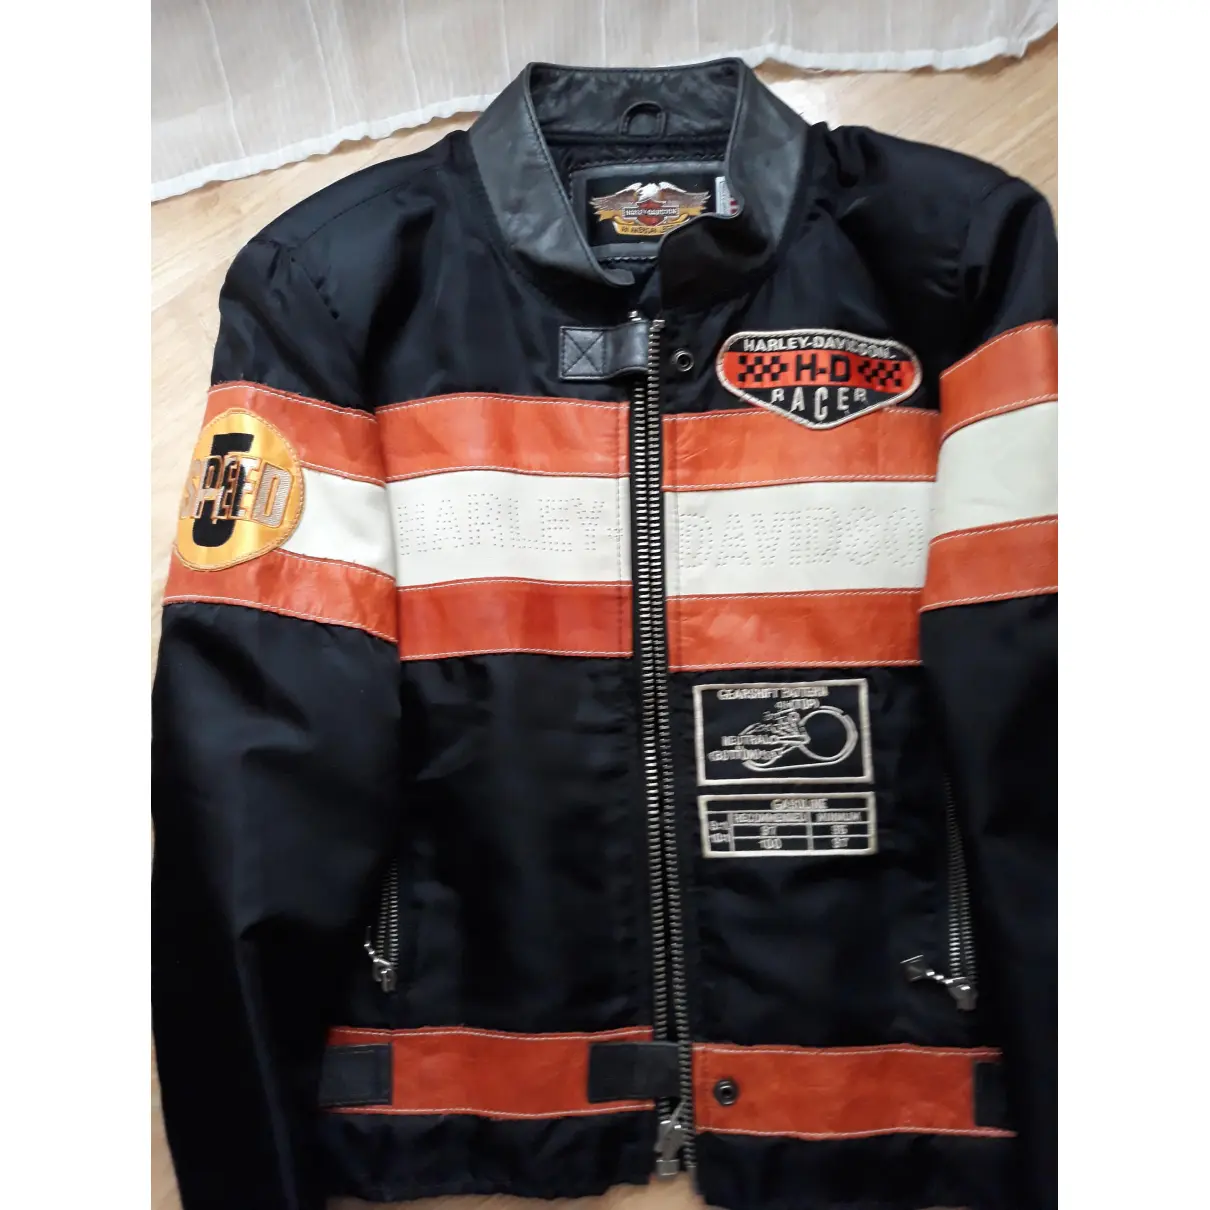 Leather biker jacket HARLEY DAVIDSON